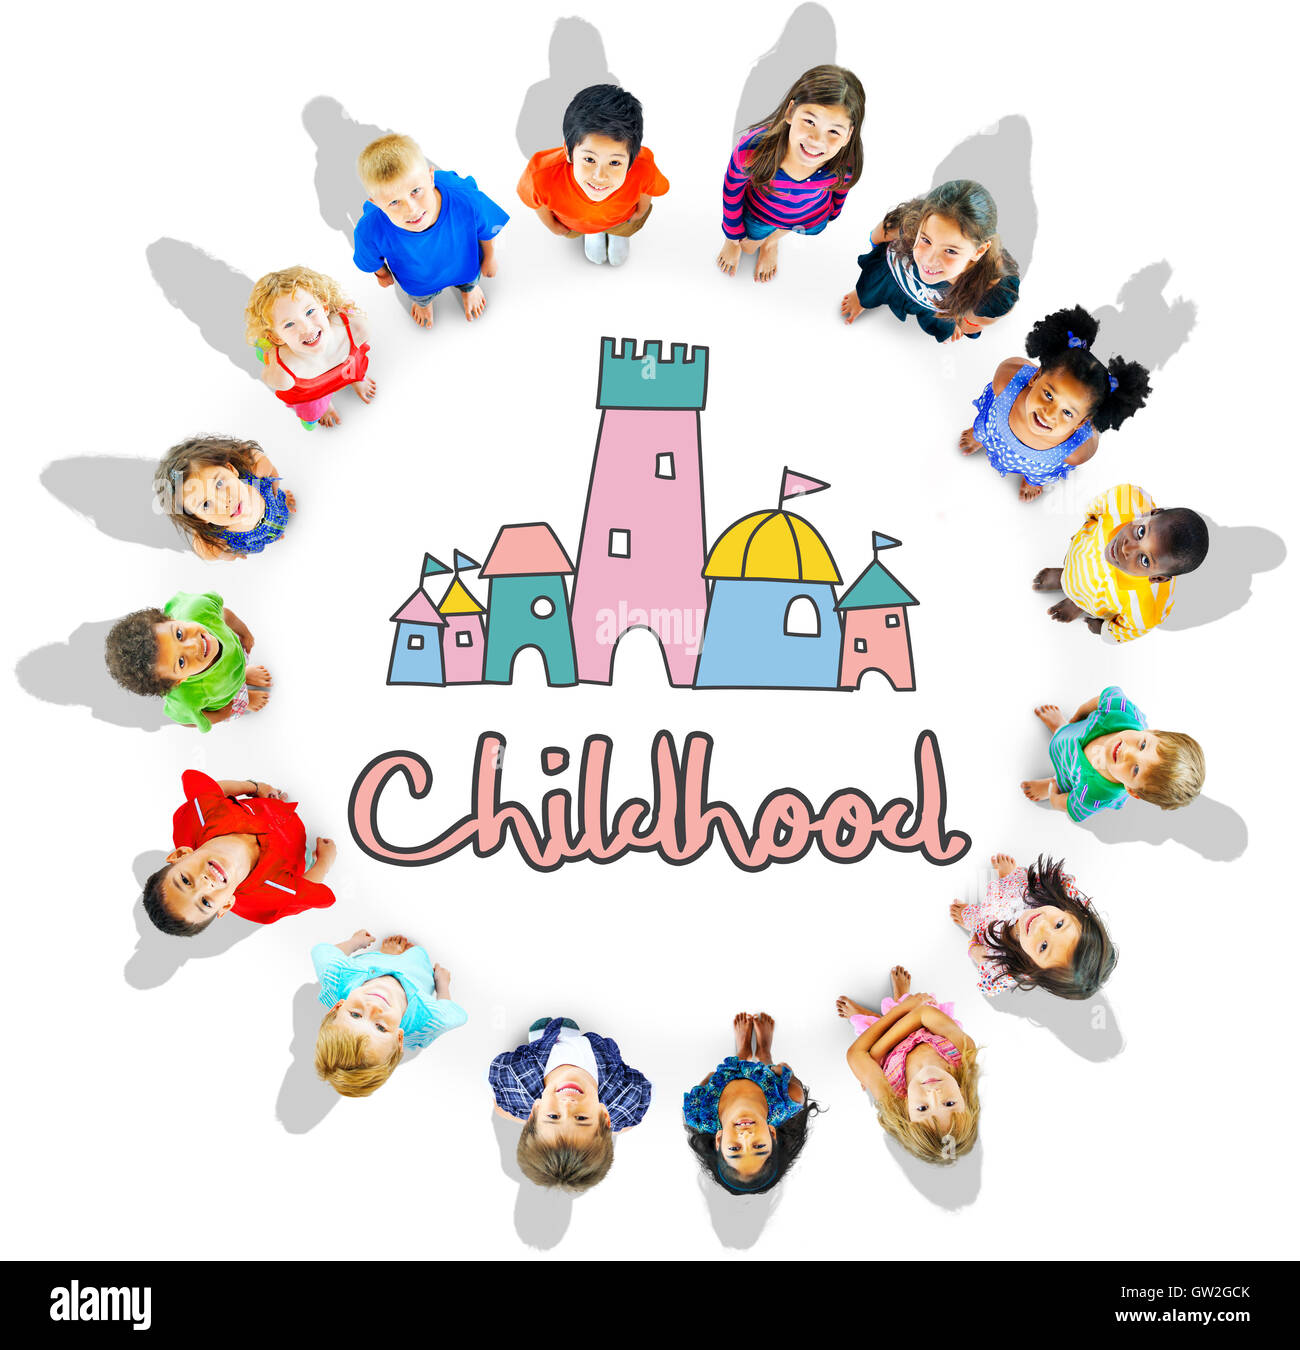 Les enfants de la petite enfance Château Palace Concept Graphique Banque D'Images